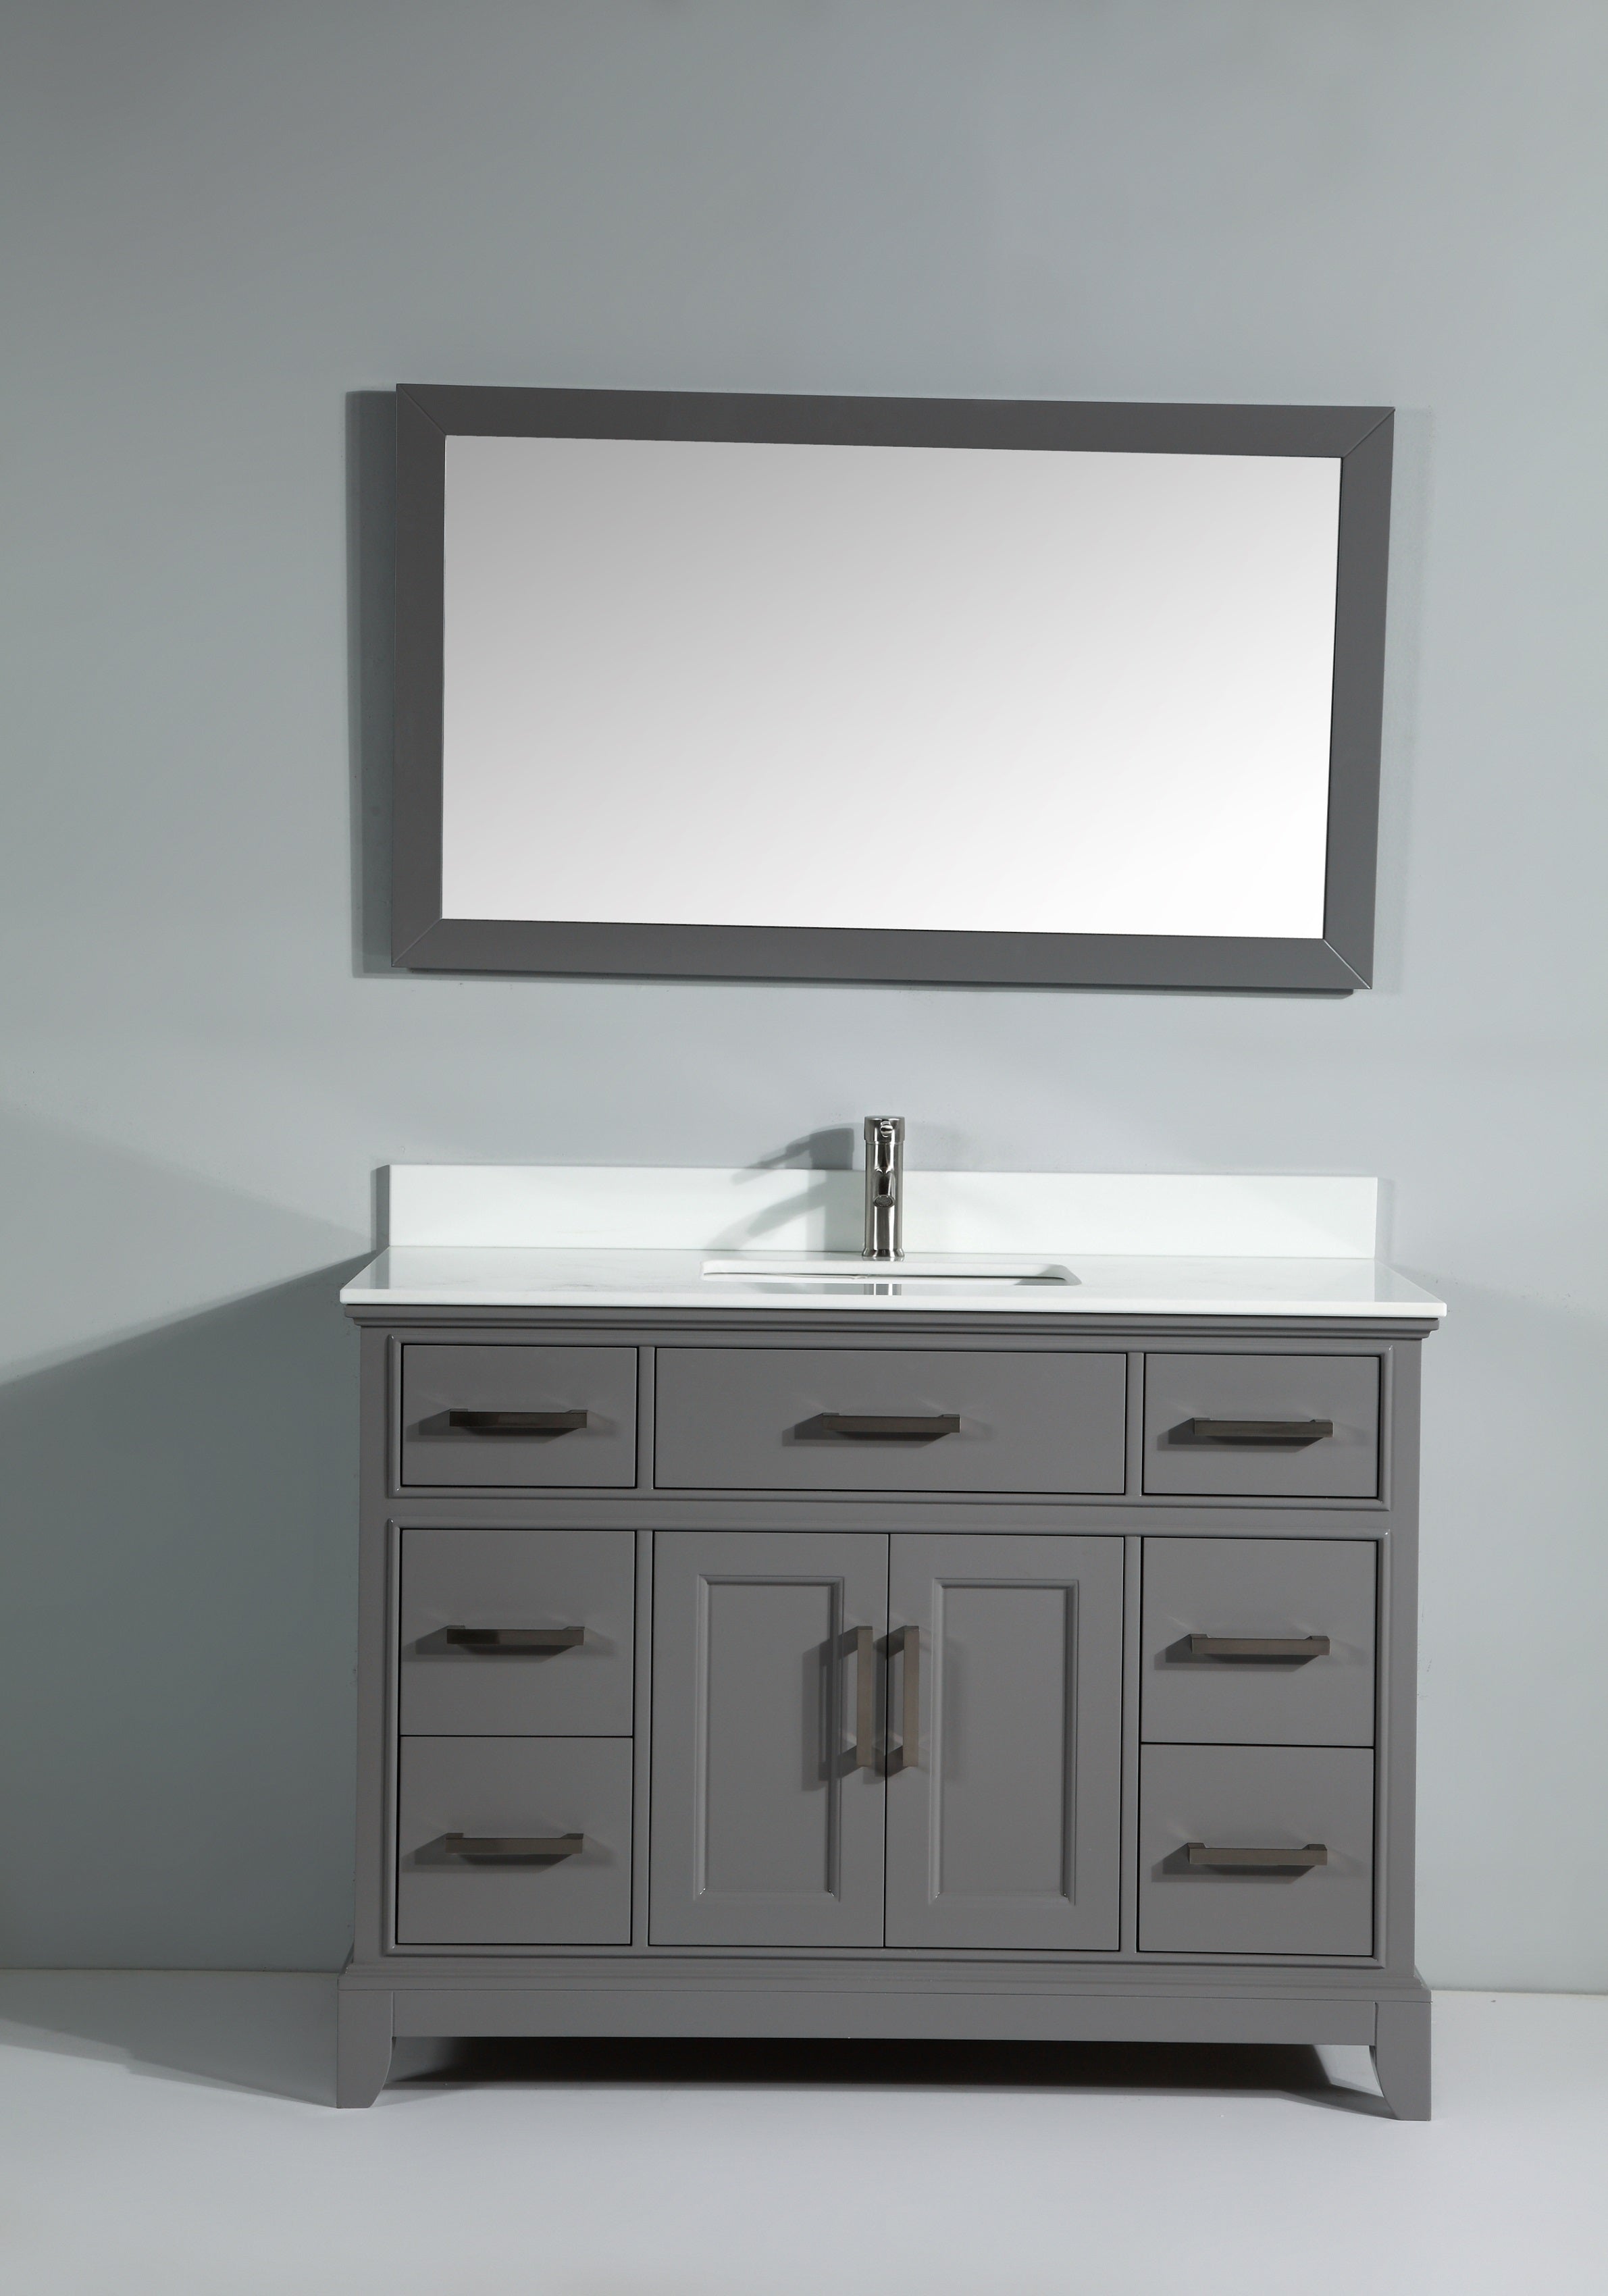 Vanity Art - Paris 48" Single Sink Bathroom Vanity Set with Sink and Mirror - Bhdepot 